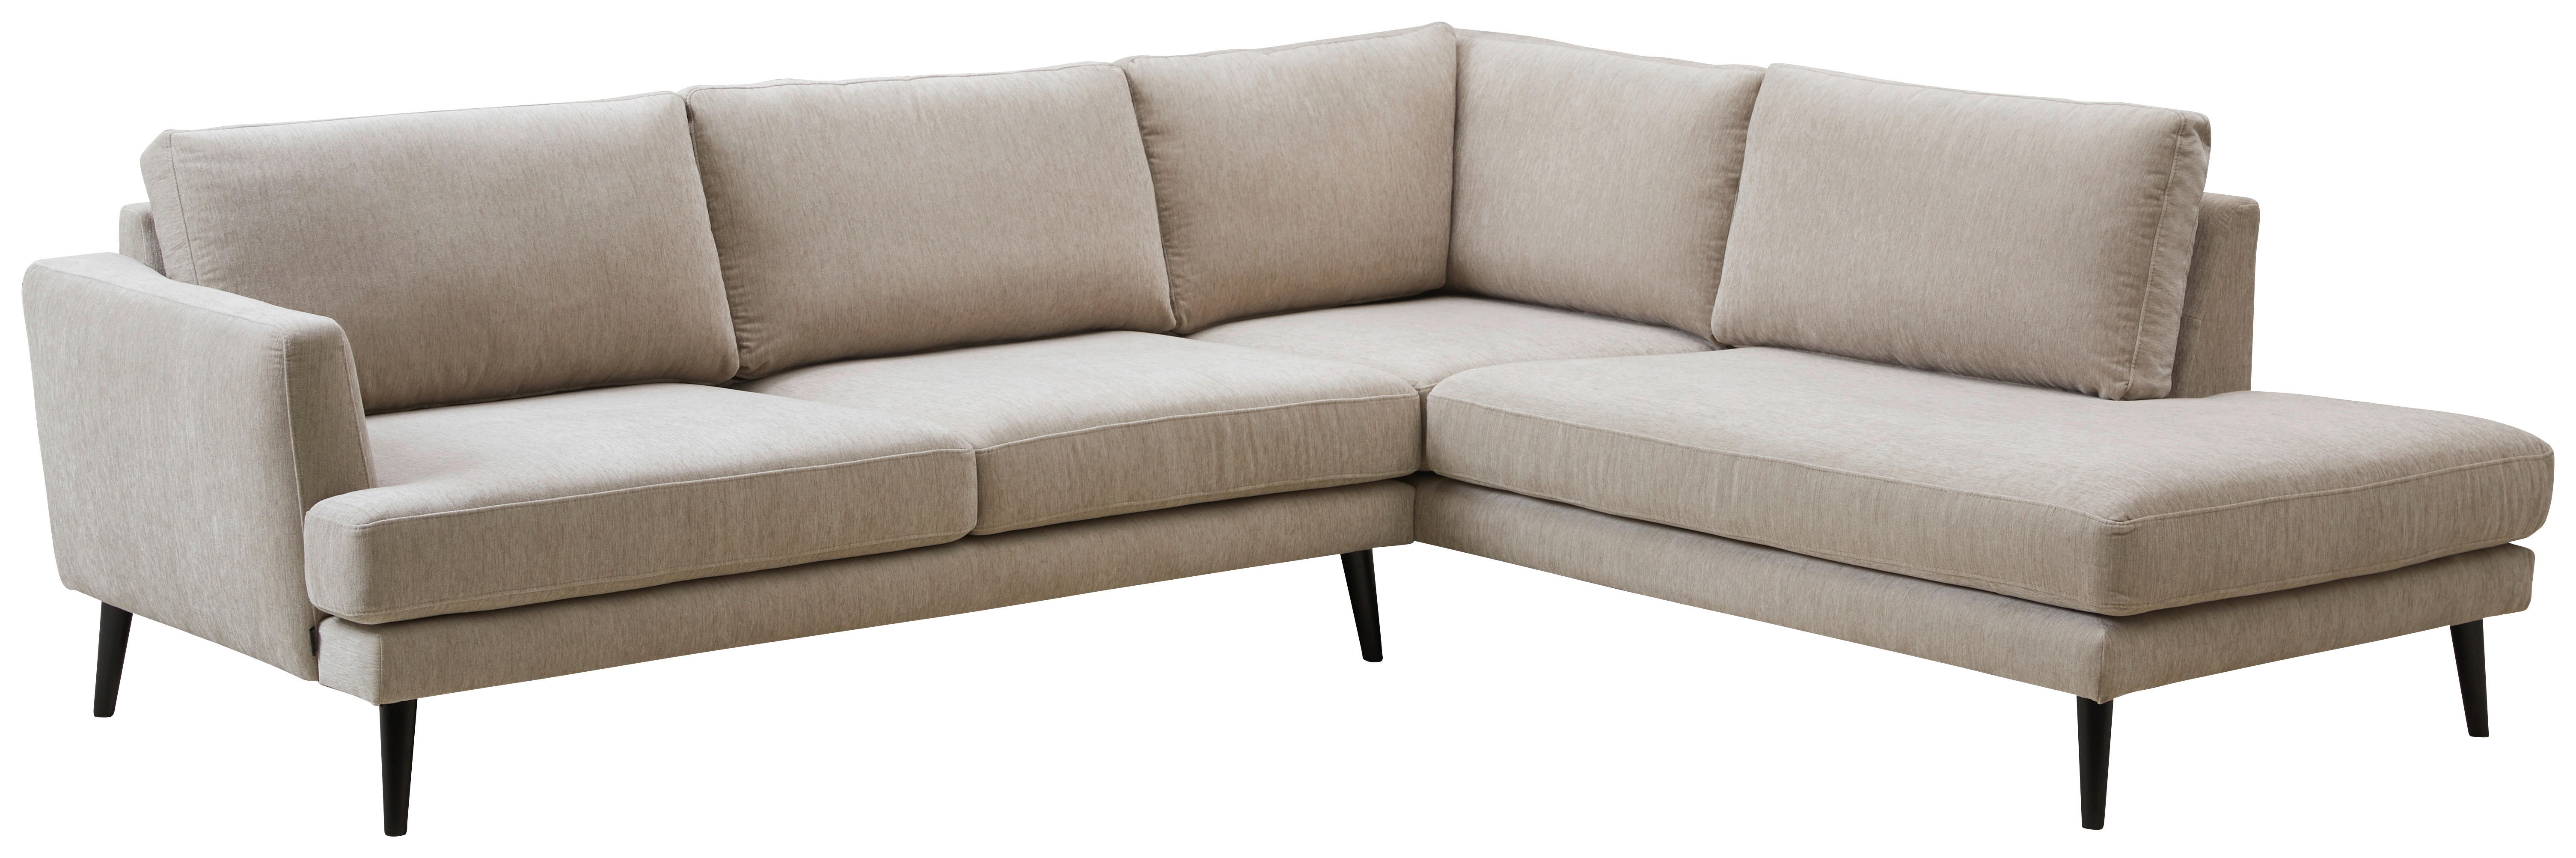 SOFFA i trä, textil greige  - greige/svart, Design, trä/textil (267/85/224cm) - Pure Home Comfort